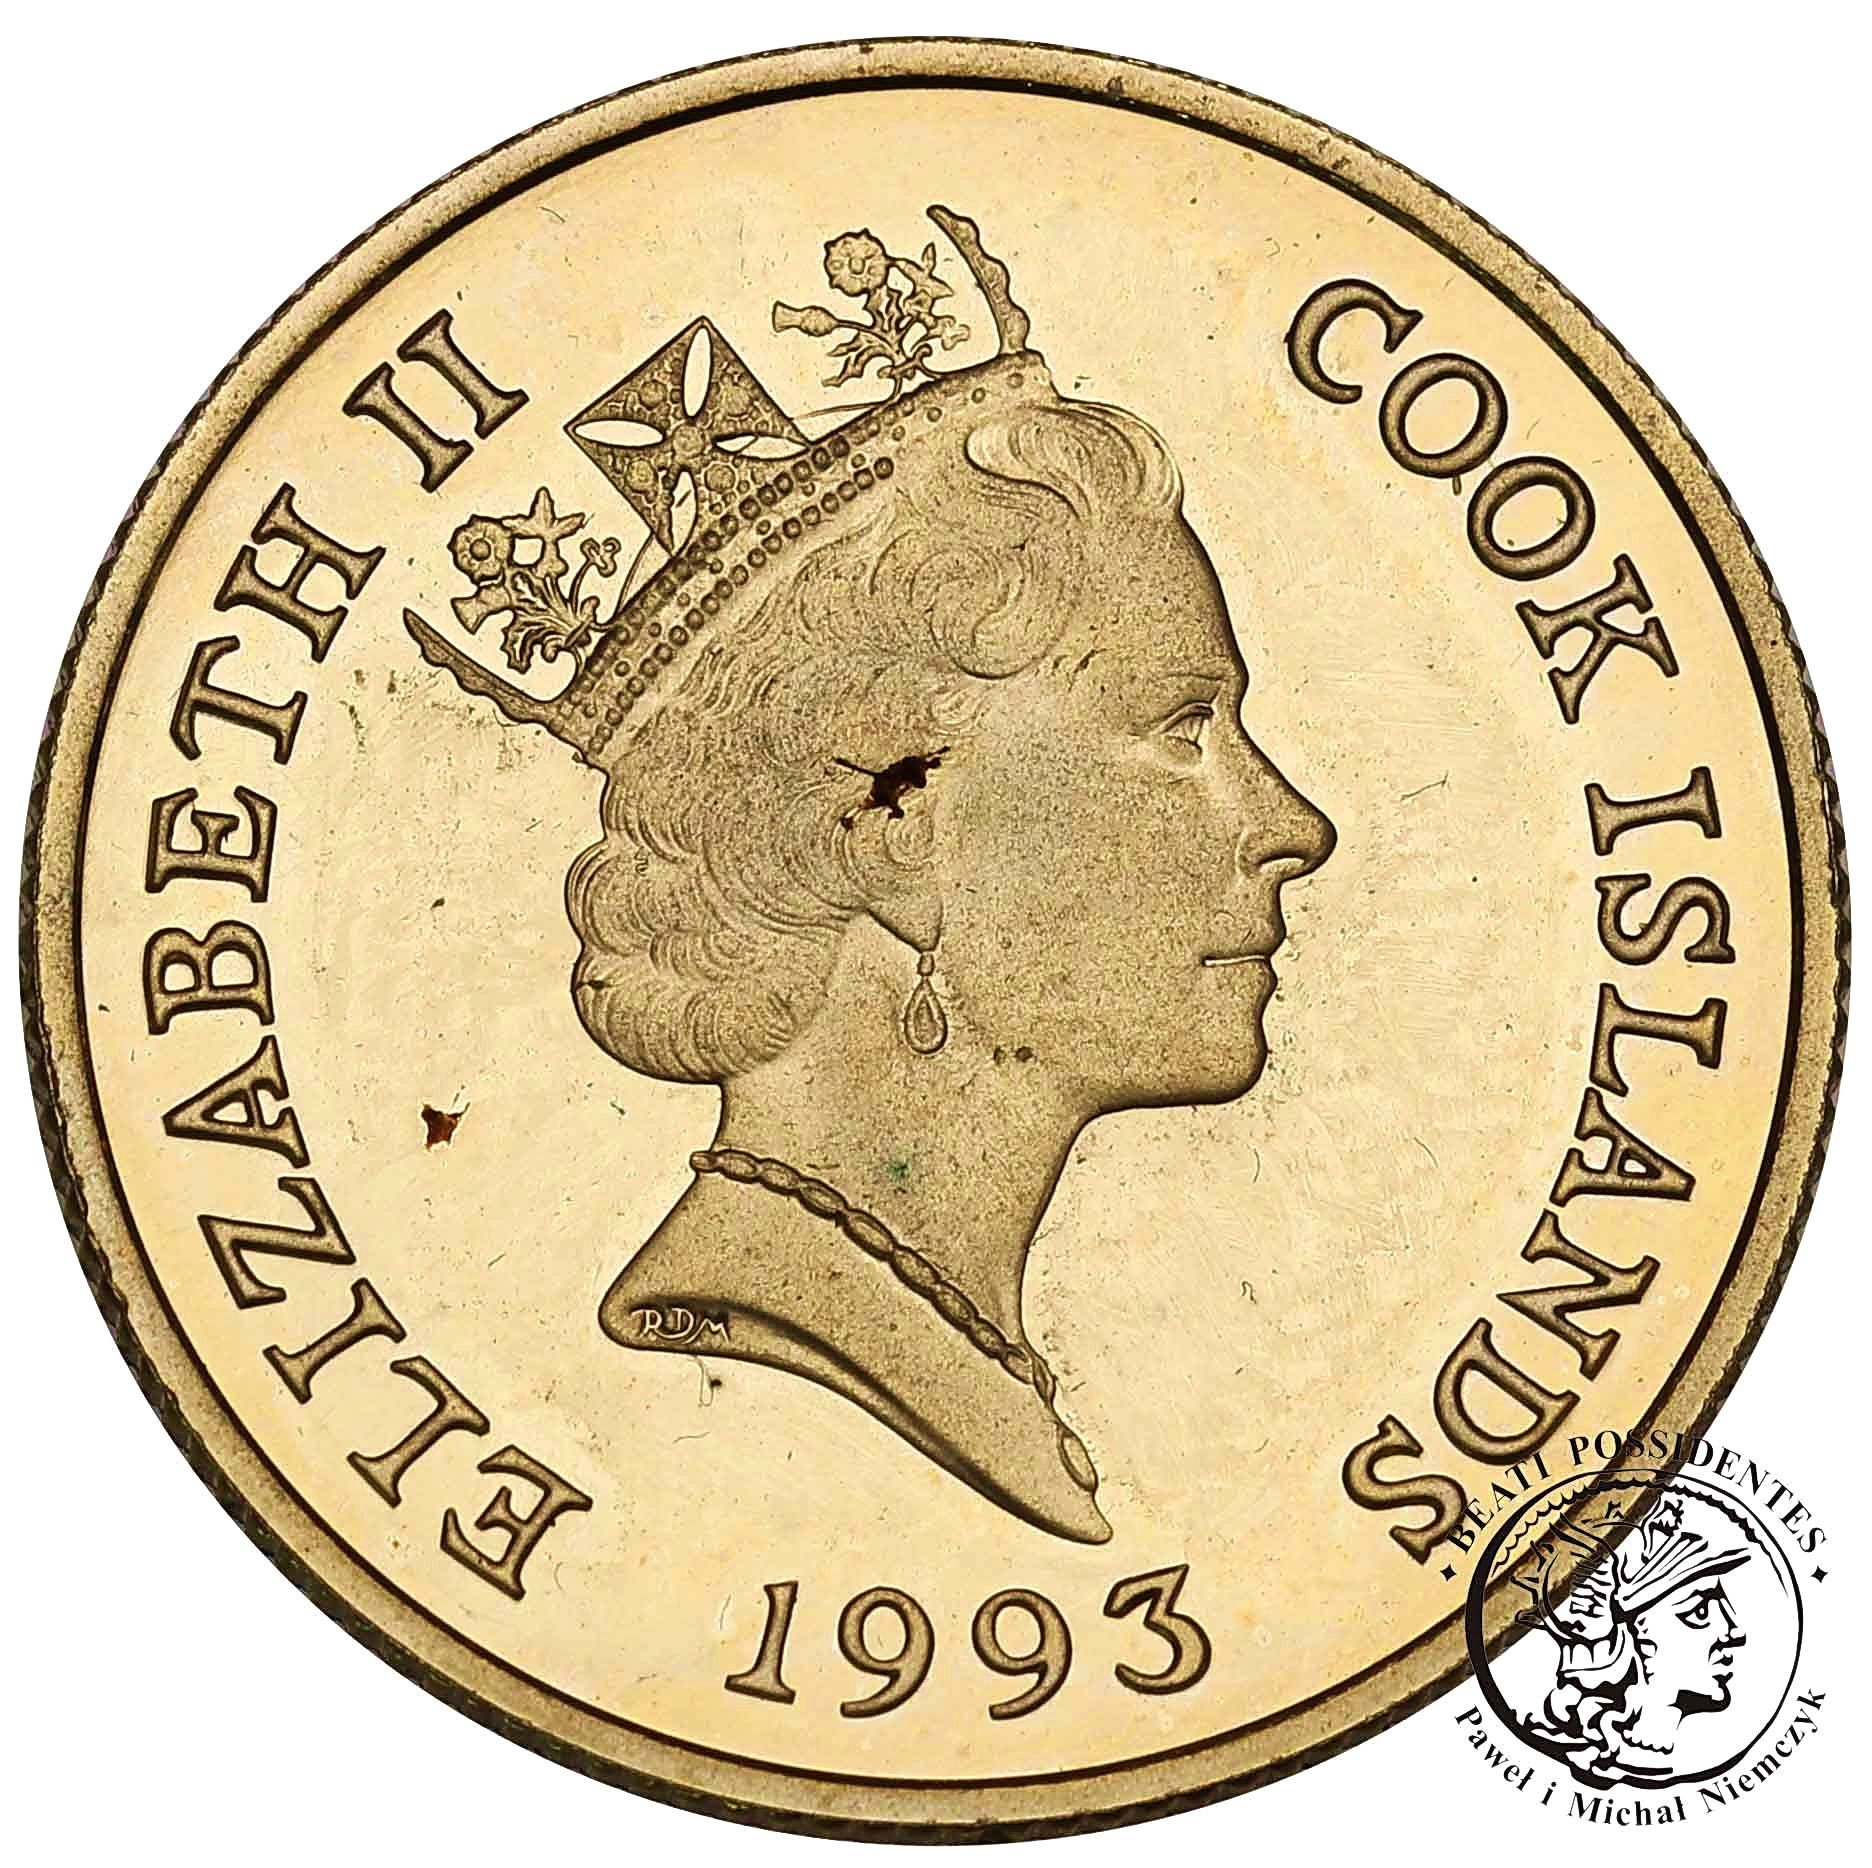 Cook Islands 50 dolarów 1993 odkrycie Ameryki st. L